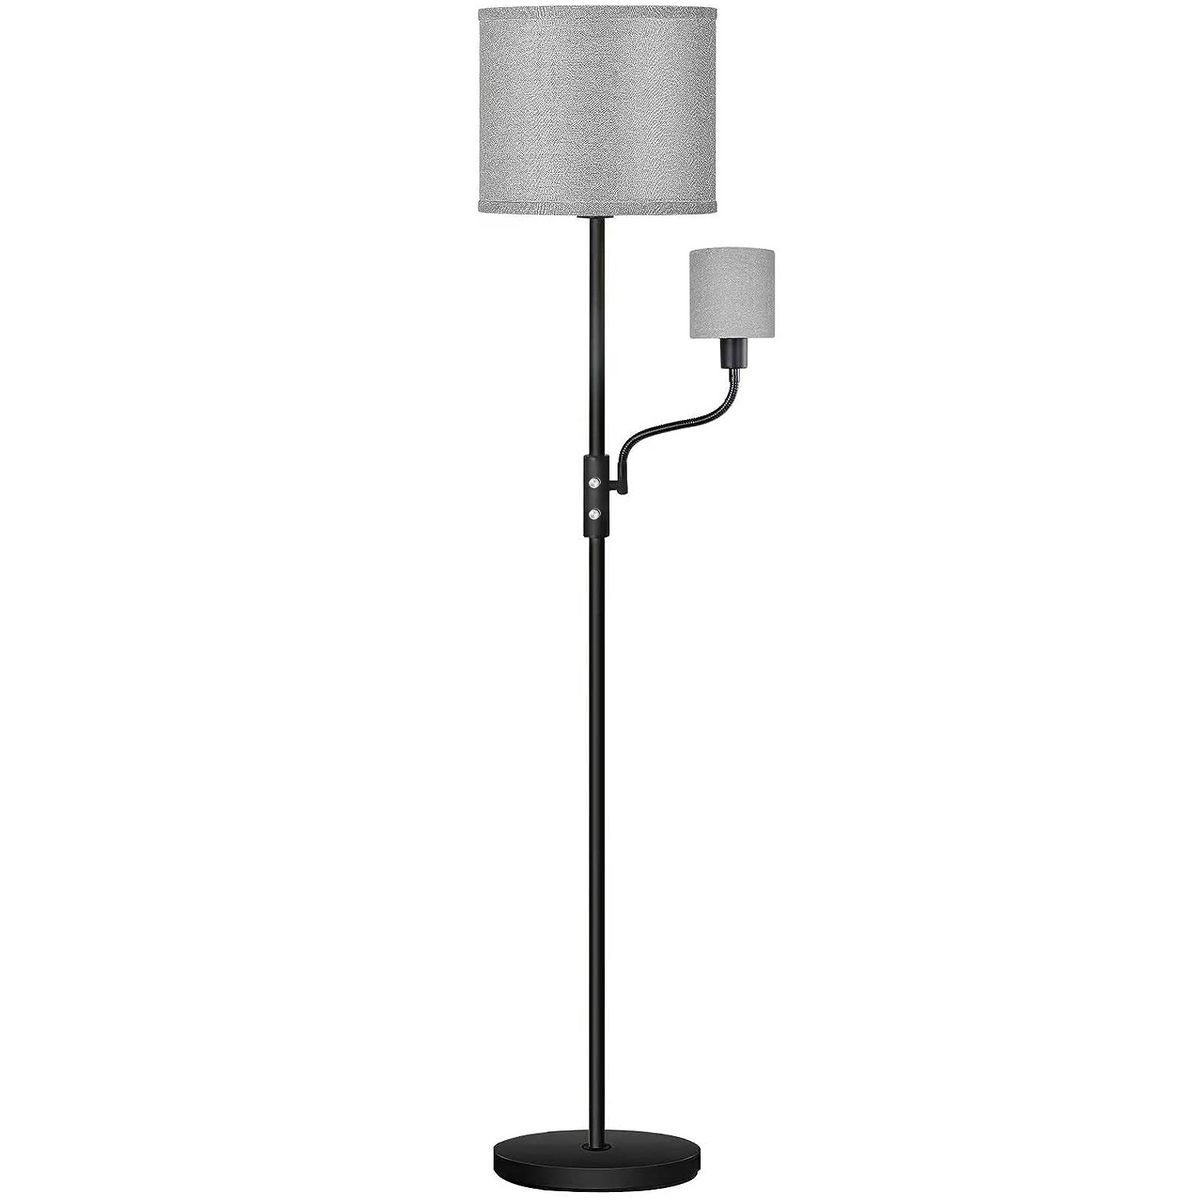 Photos - Floodlight / Garden Lamps iMounTEK ® Modern 2-LED Floor Lamp with Shade -  Floor Lam 